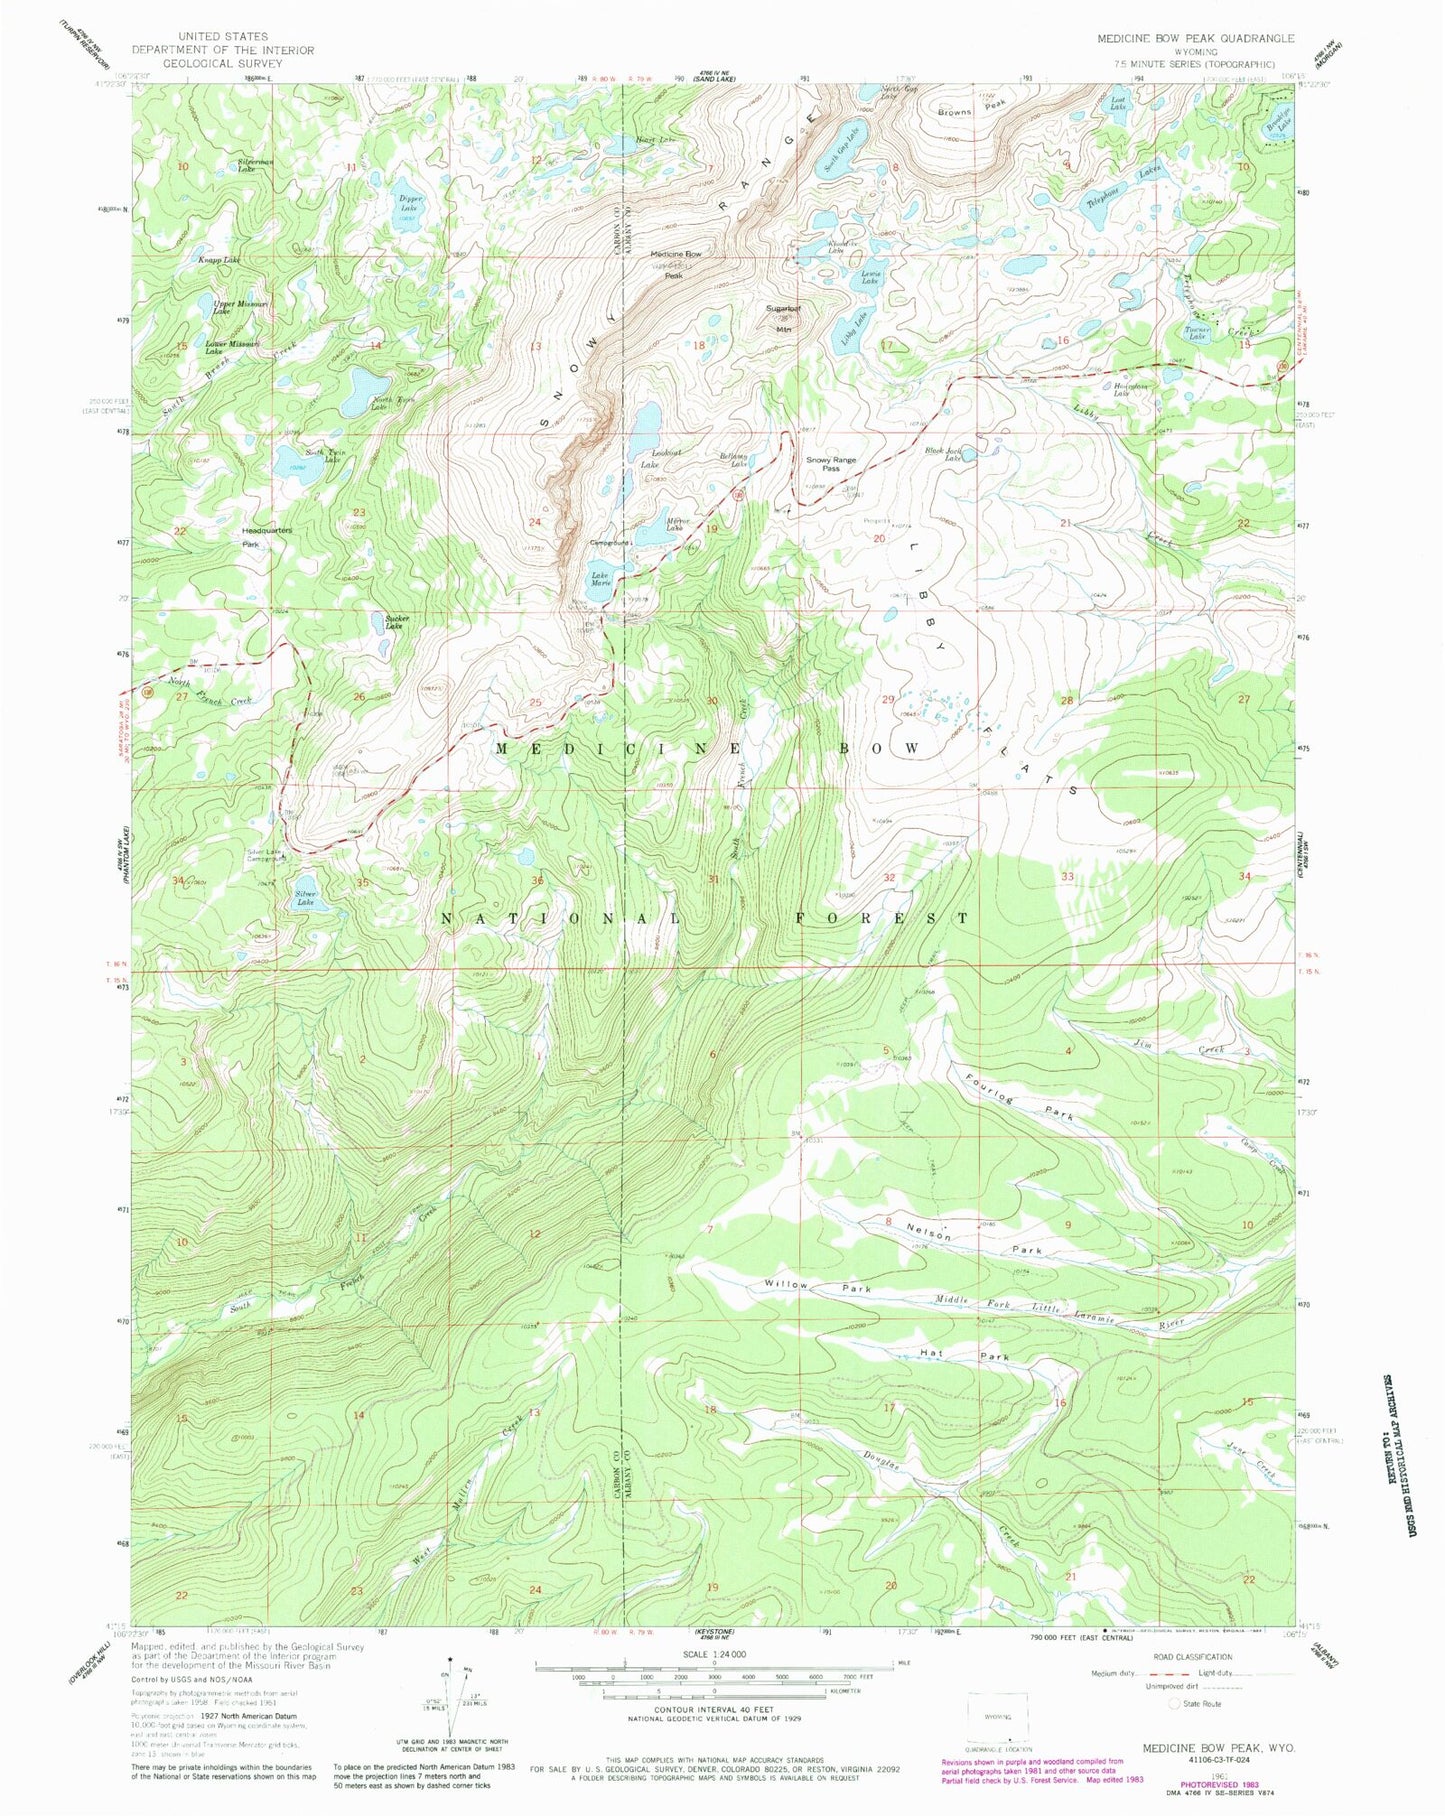 USGS Classic Medicine Bow Peak Wyoming 7.5'x7.5' Topo Map Image